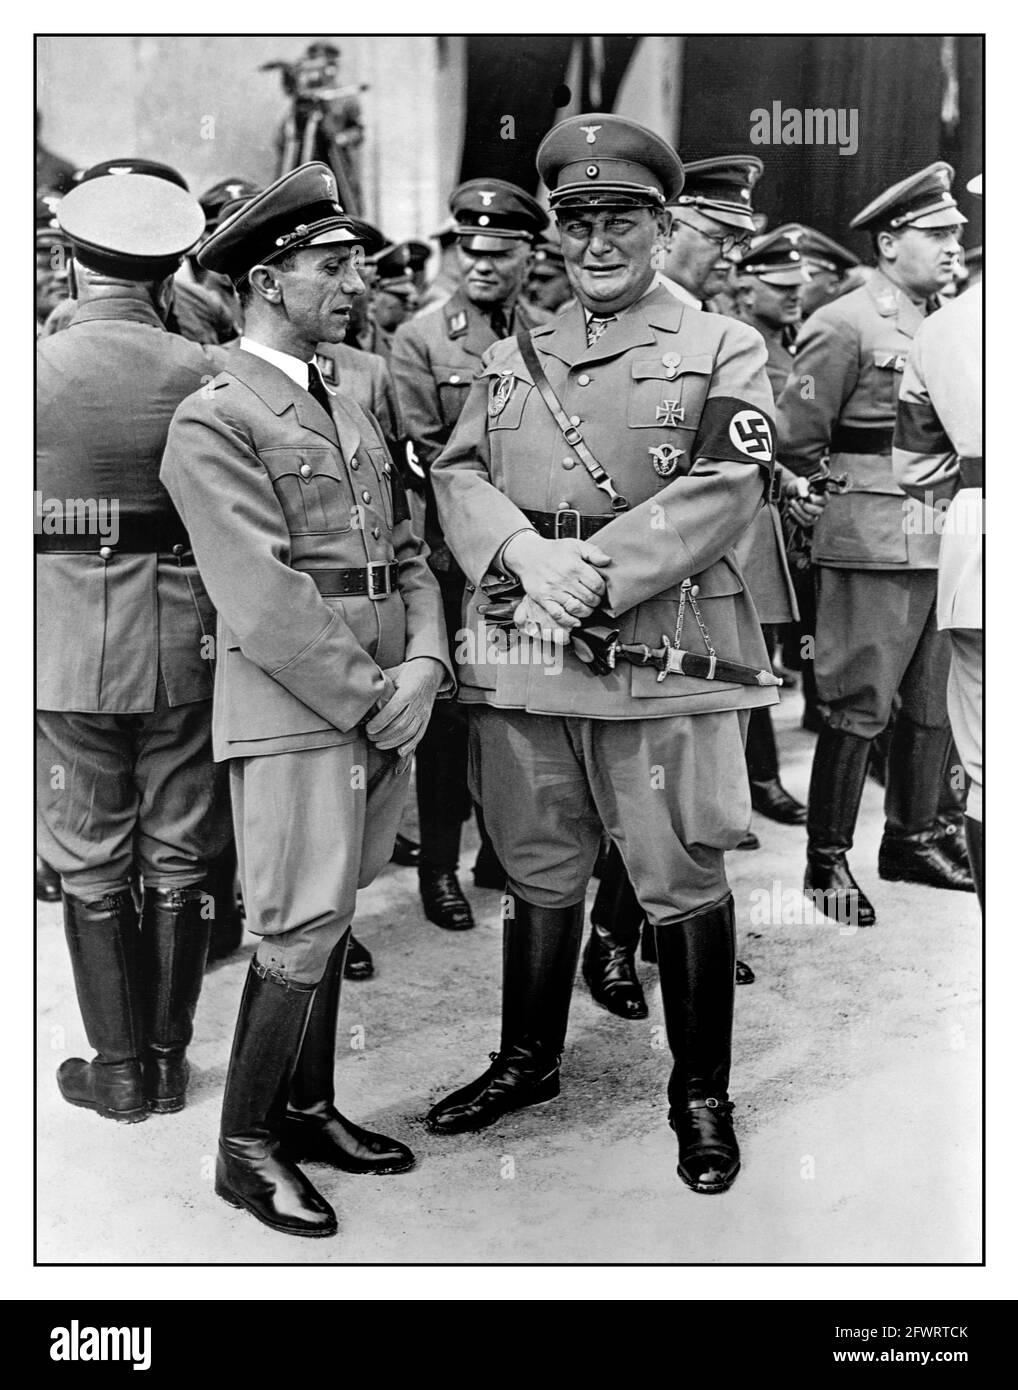 1930 Propaganda Foto nazista del Dr Joseph Goebbels e Hermann Goering in uniforme con jackboot che indossano braccialetti Swastika in piedi insieme ad altri ufficiali di alto rango del Partito nazista. Germania, 1936. Foto Stock